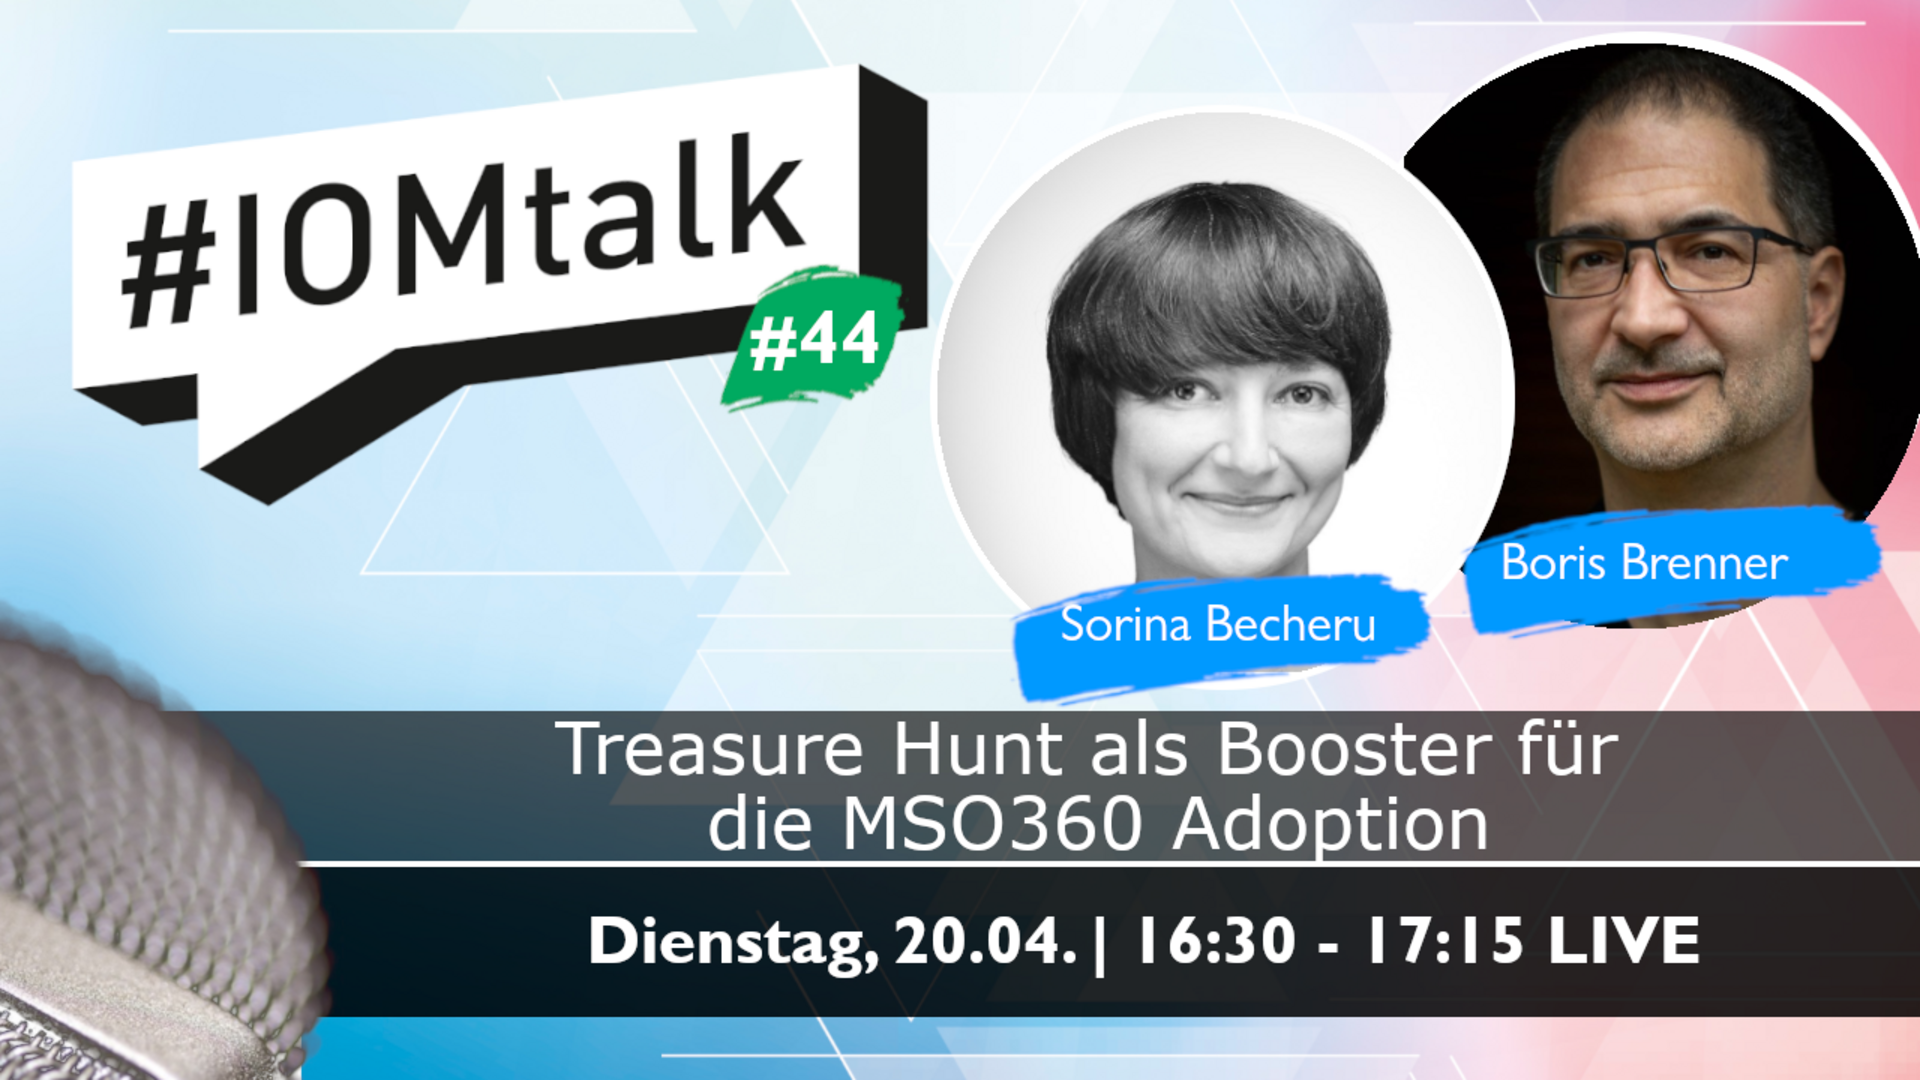 Im Gespräch mit Sorina Becheru & Boris Brenner zu "Treasure Hunt" - dem Booster für die Microsoft 365 Adoption